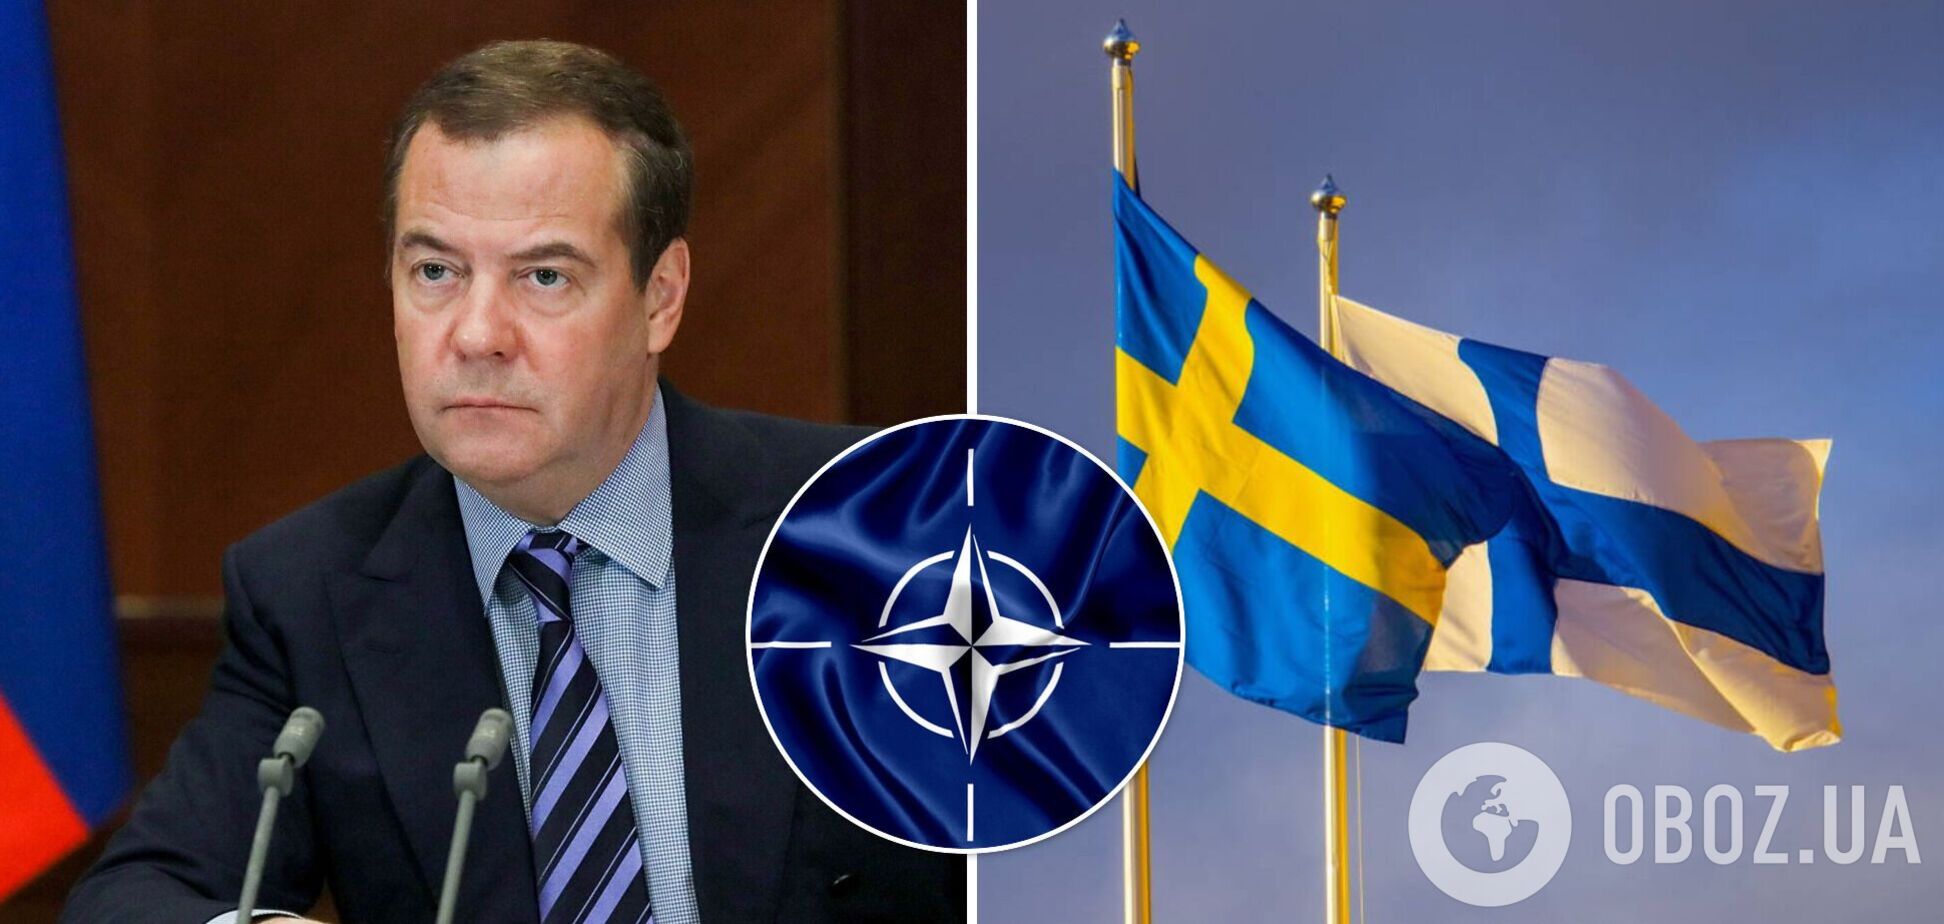 В Кремле назвали Швецию и Финляндию потенциальными противниками: Медведев снова 'пригрозил' НАТО